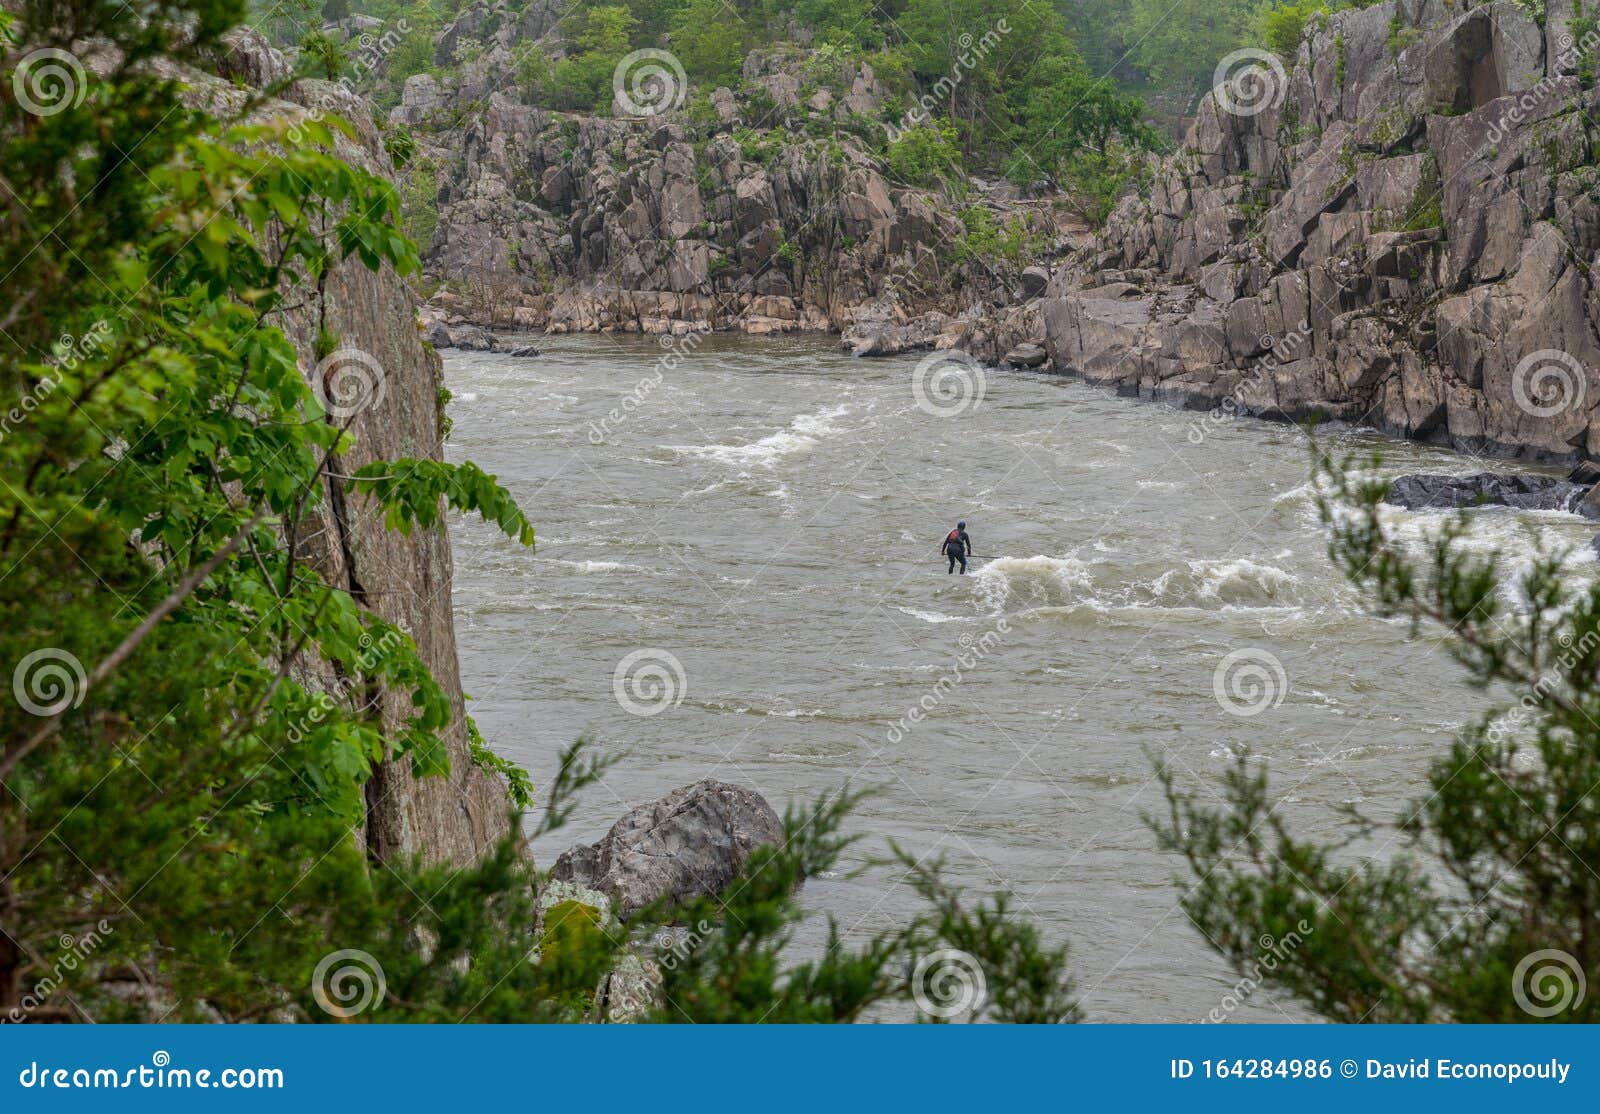 Mann Auf Kayak Im Neoprenanzug Auf Kajak am Fluss Stockfoto - Bild von  person, ansicht: 164284986